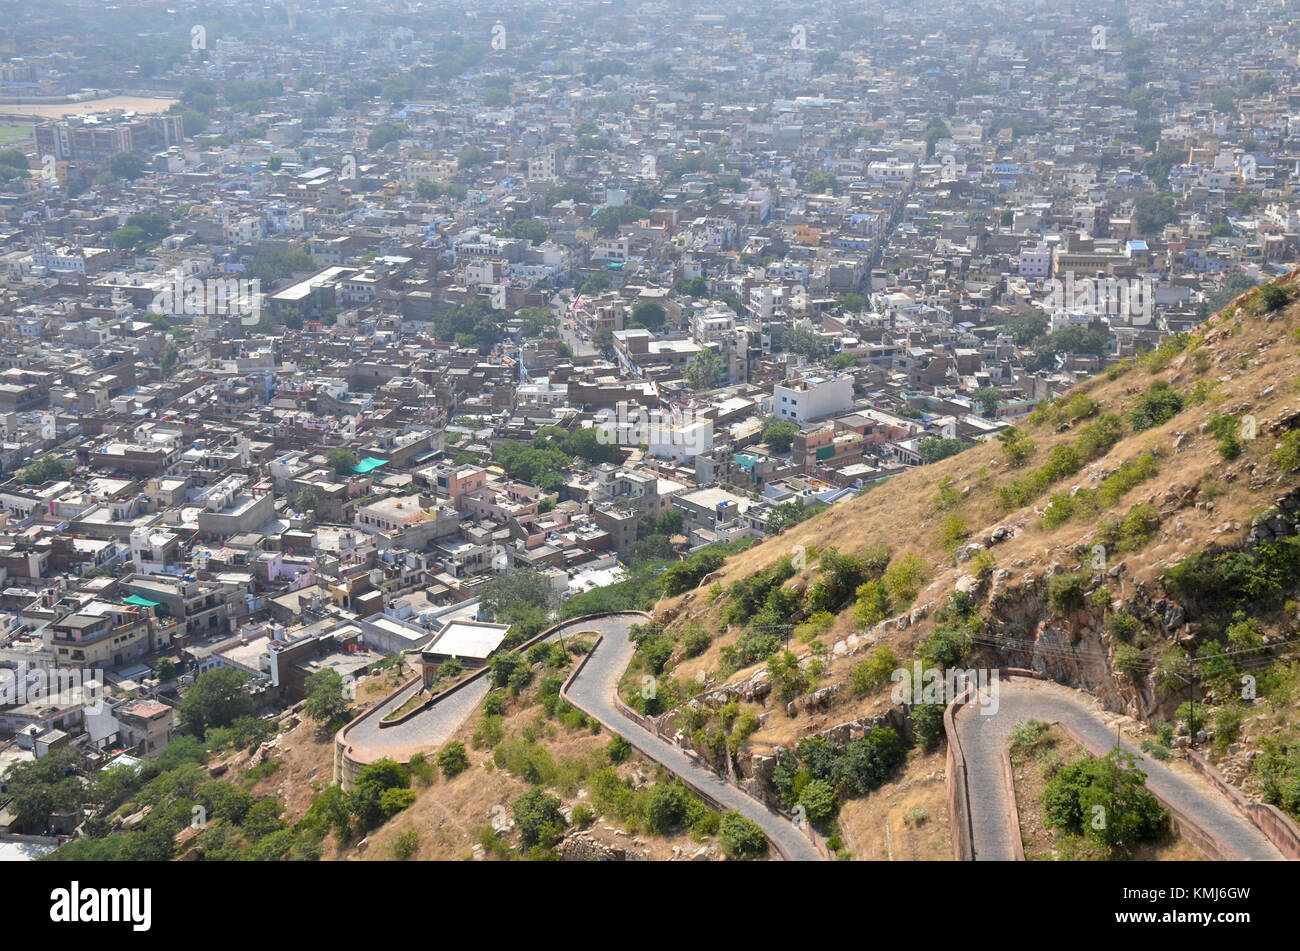 Architektur von Indien Jaipur fort Nakhargar Blick auf die Stadt von oben Stockfoto